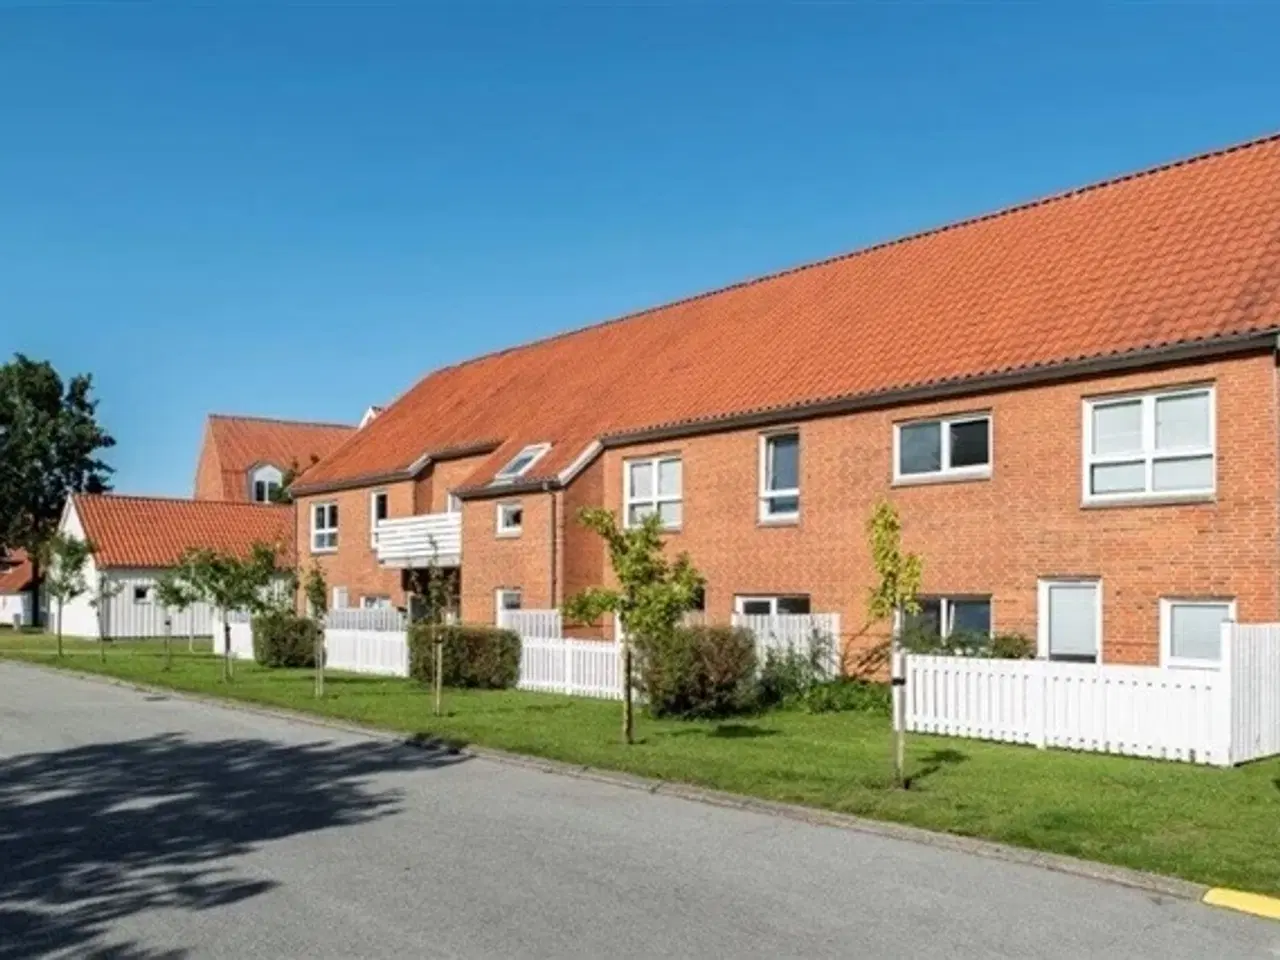 Billede 1 - Markedsvej, 80 m2, 3 værelser, 5.657 kr., Frederikshavn, Nordjylland